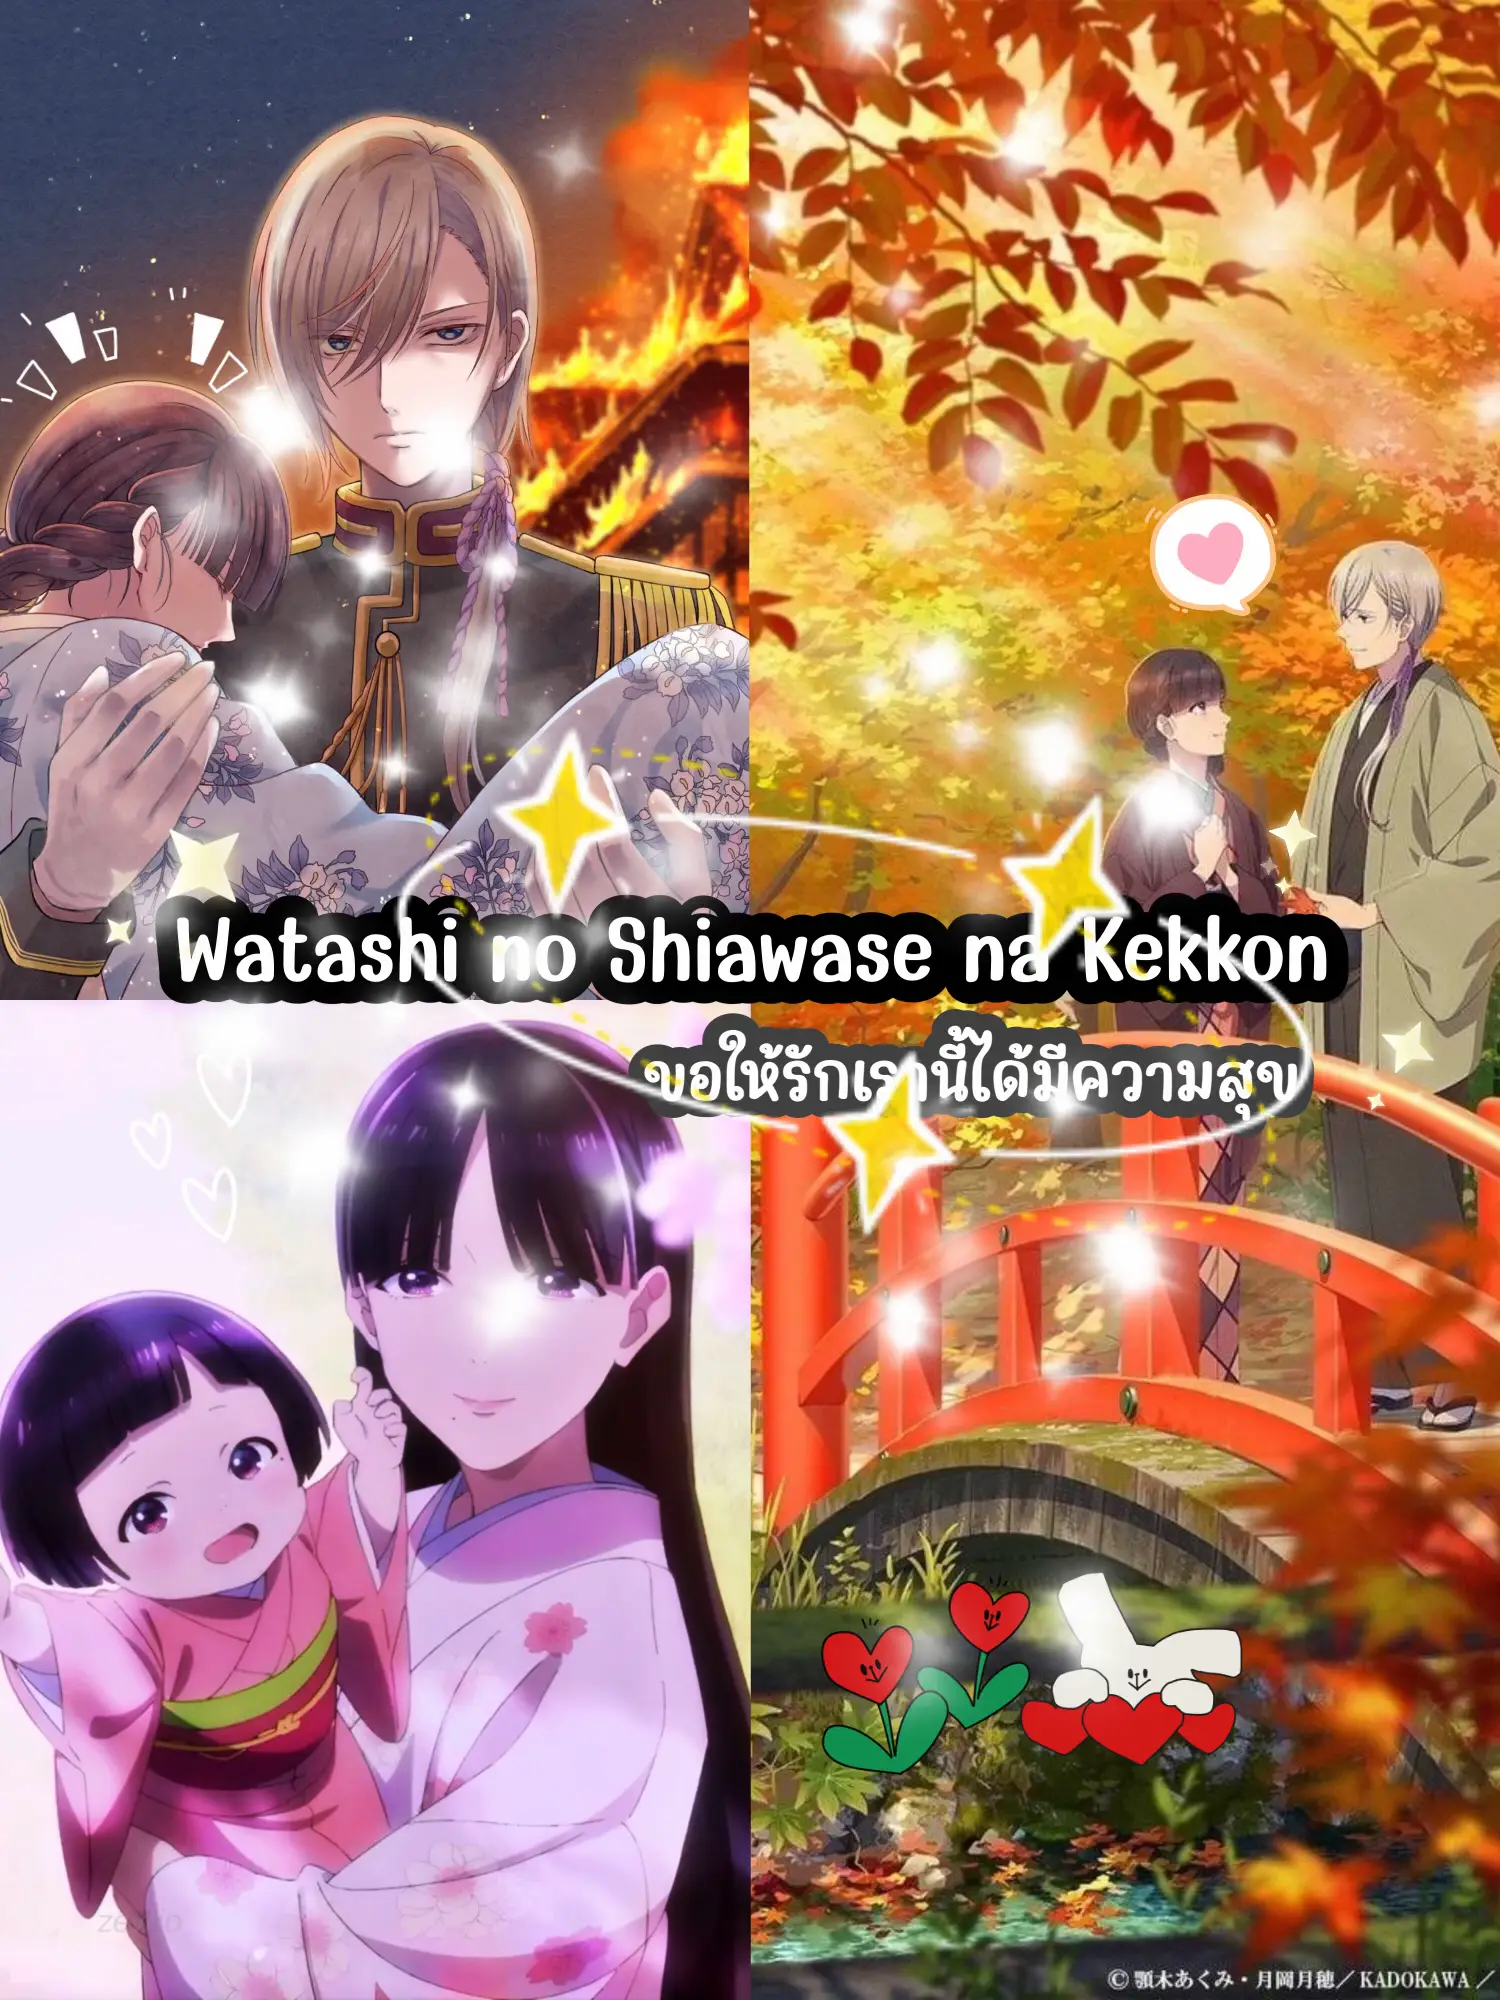 Watashi no Shiawase na Kekkon, Origins